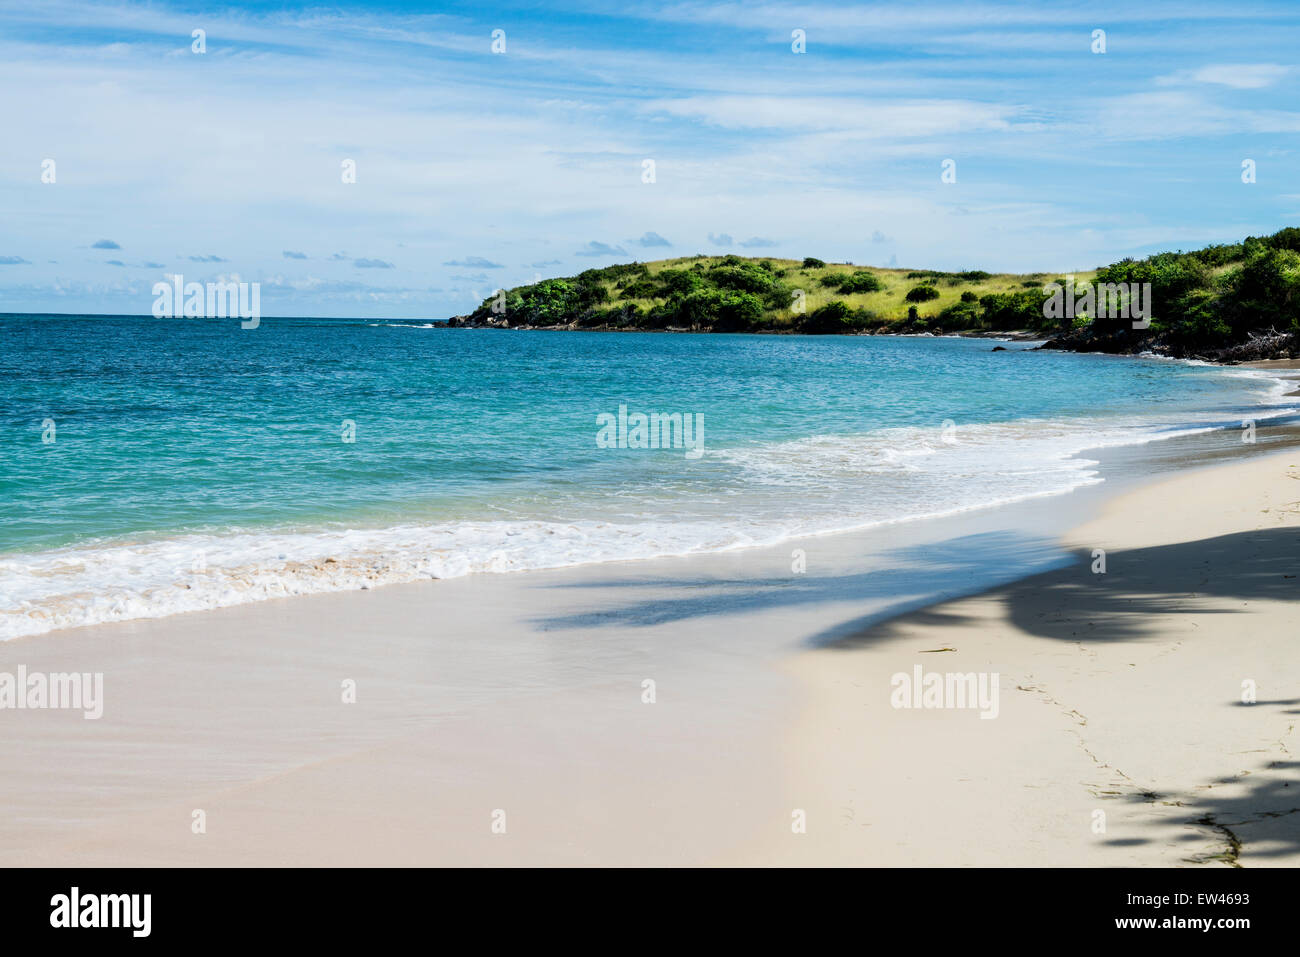 Eine Ansicht vom Strand am östlichen Ende von St. Croix, U.s. Virgin Islands, zeigt einen Schatten einer Palme am Strand. Stockfoto